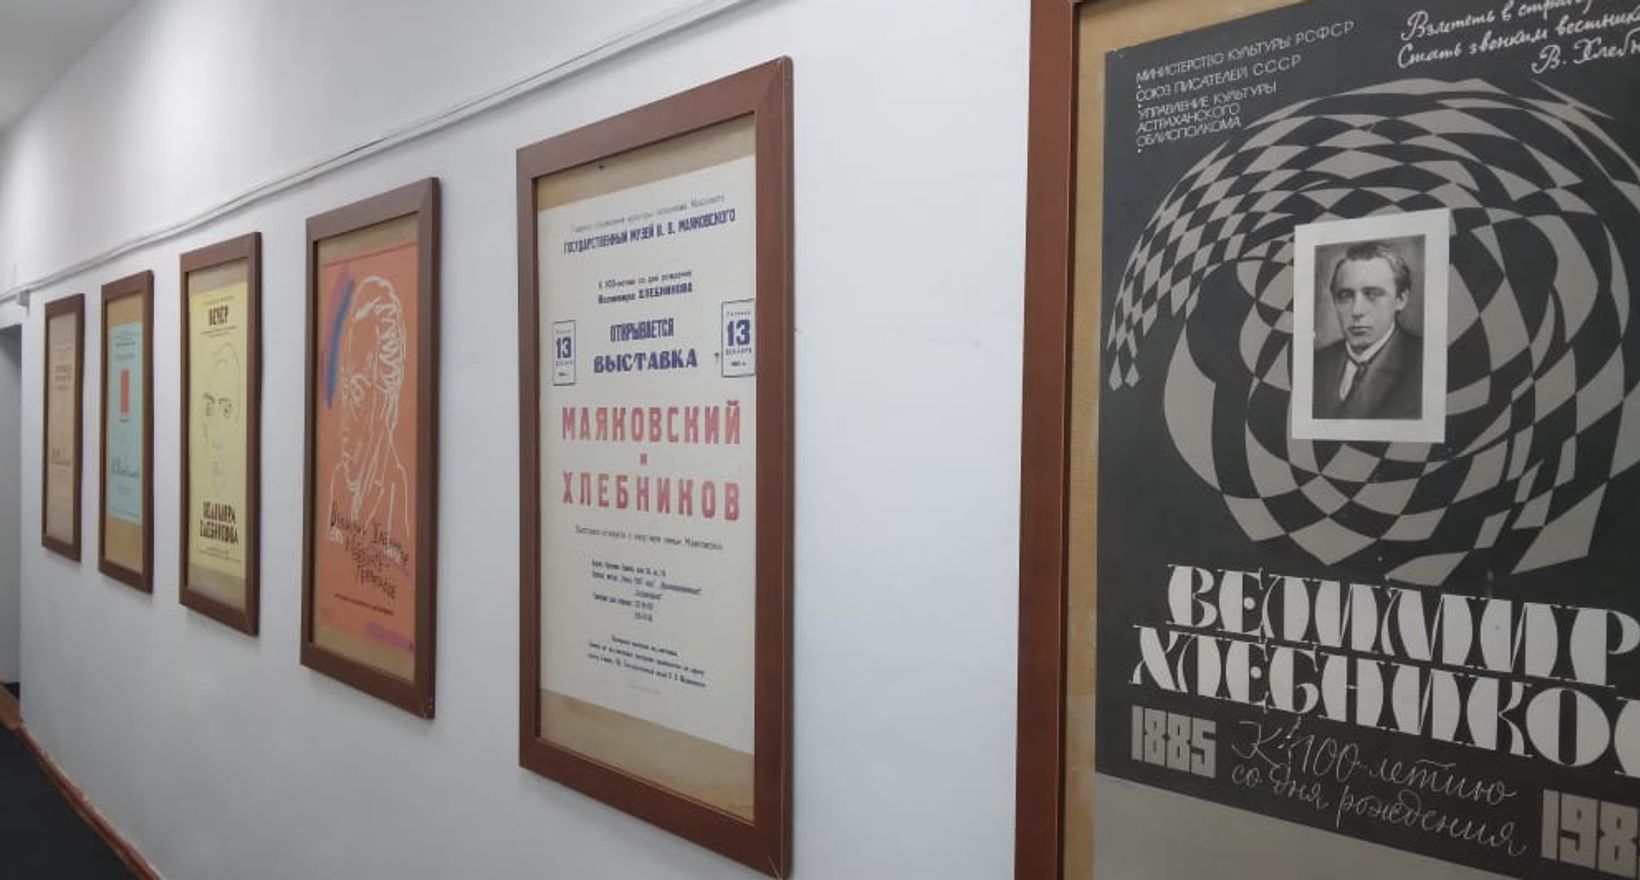 Обзорная экскурсия по залам музея Велимира Хлебникова